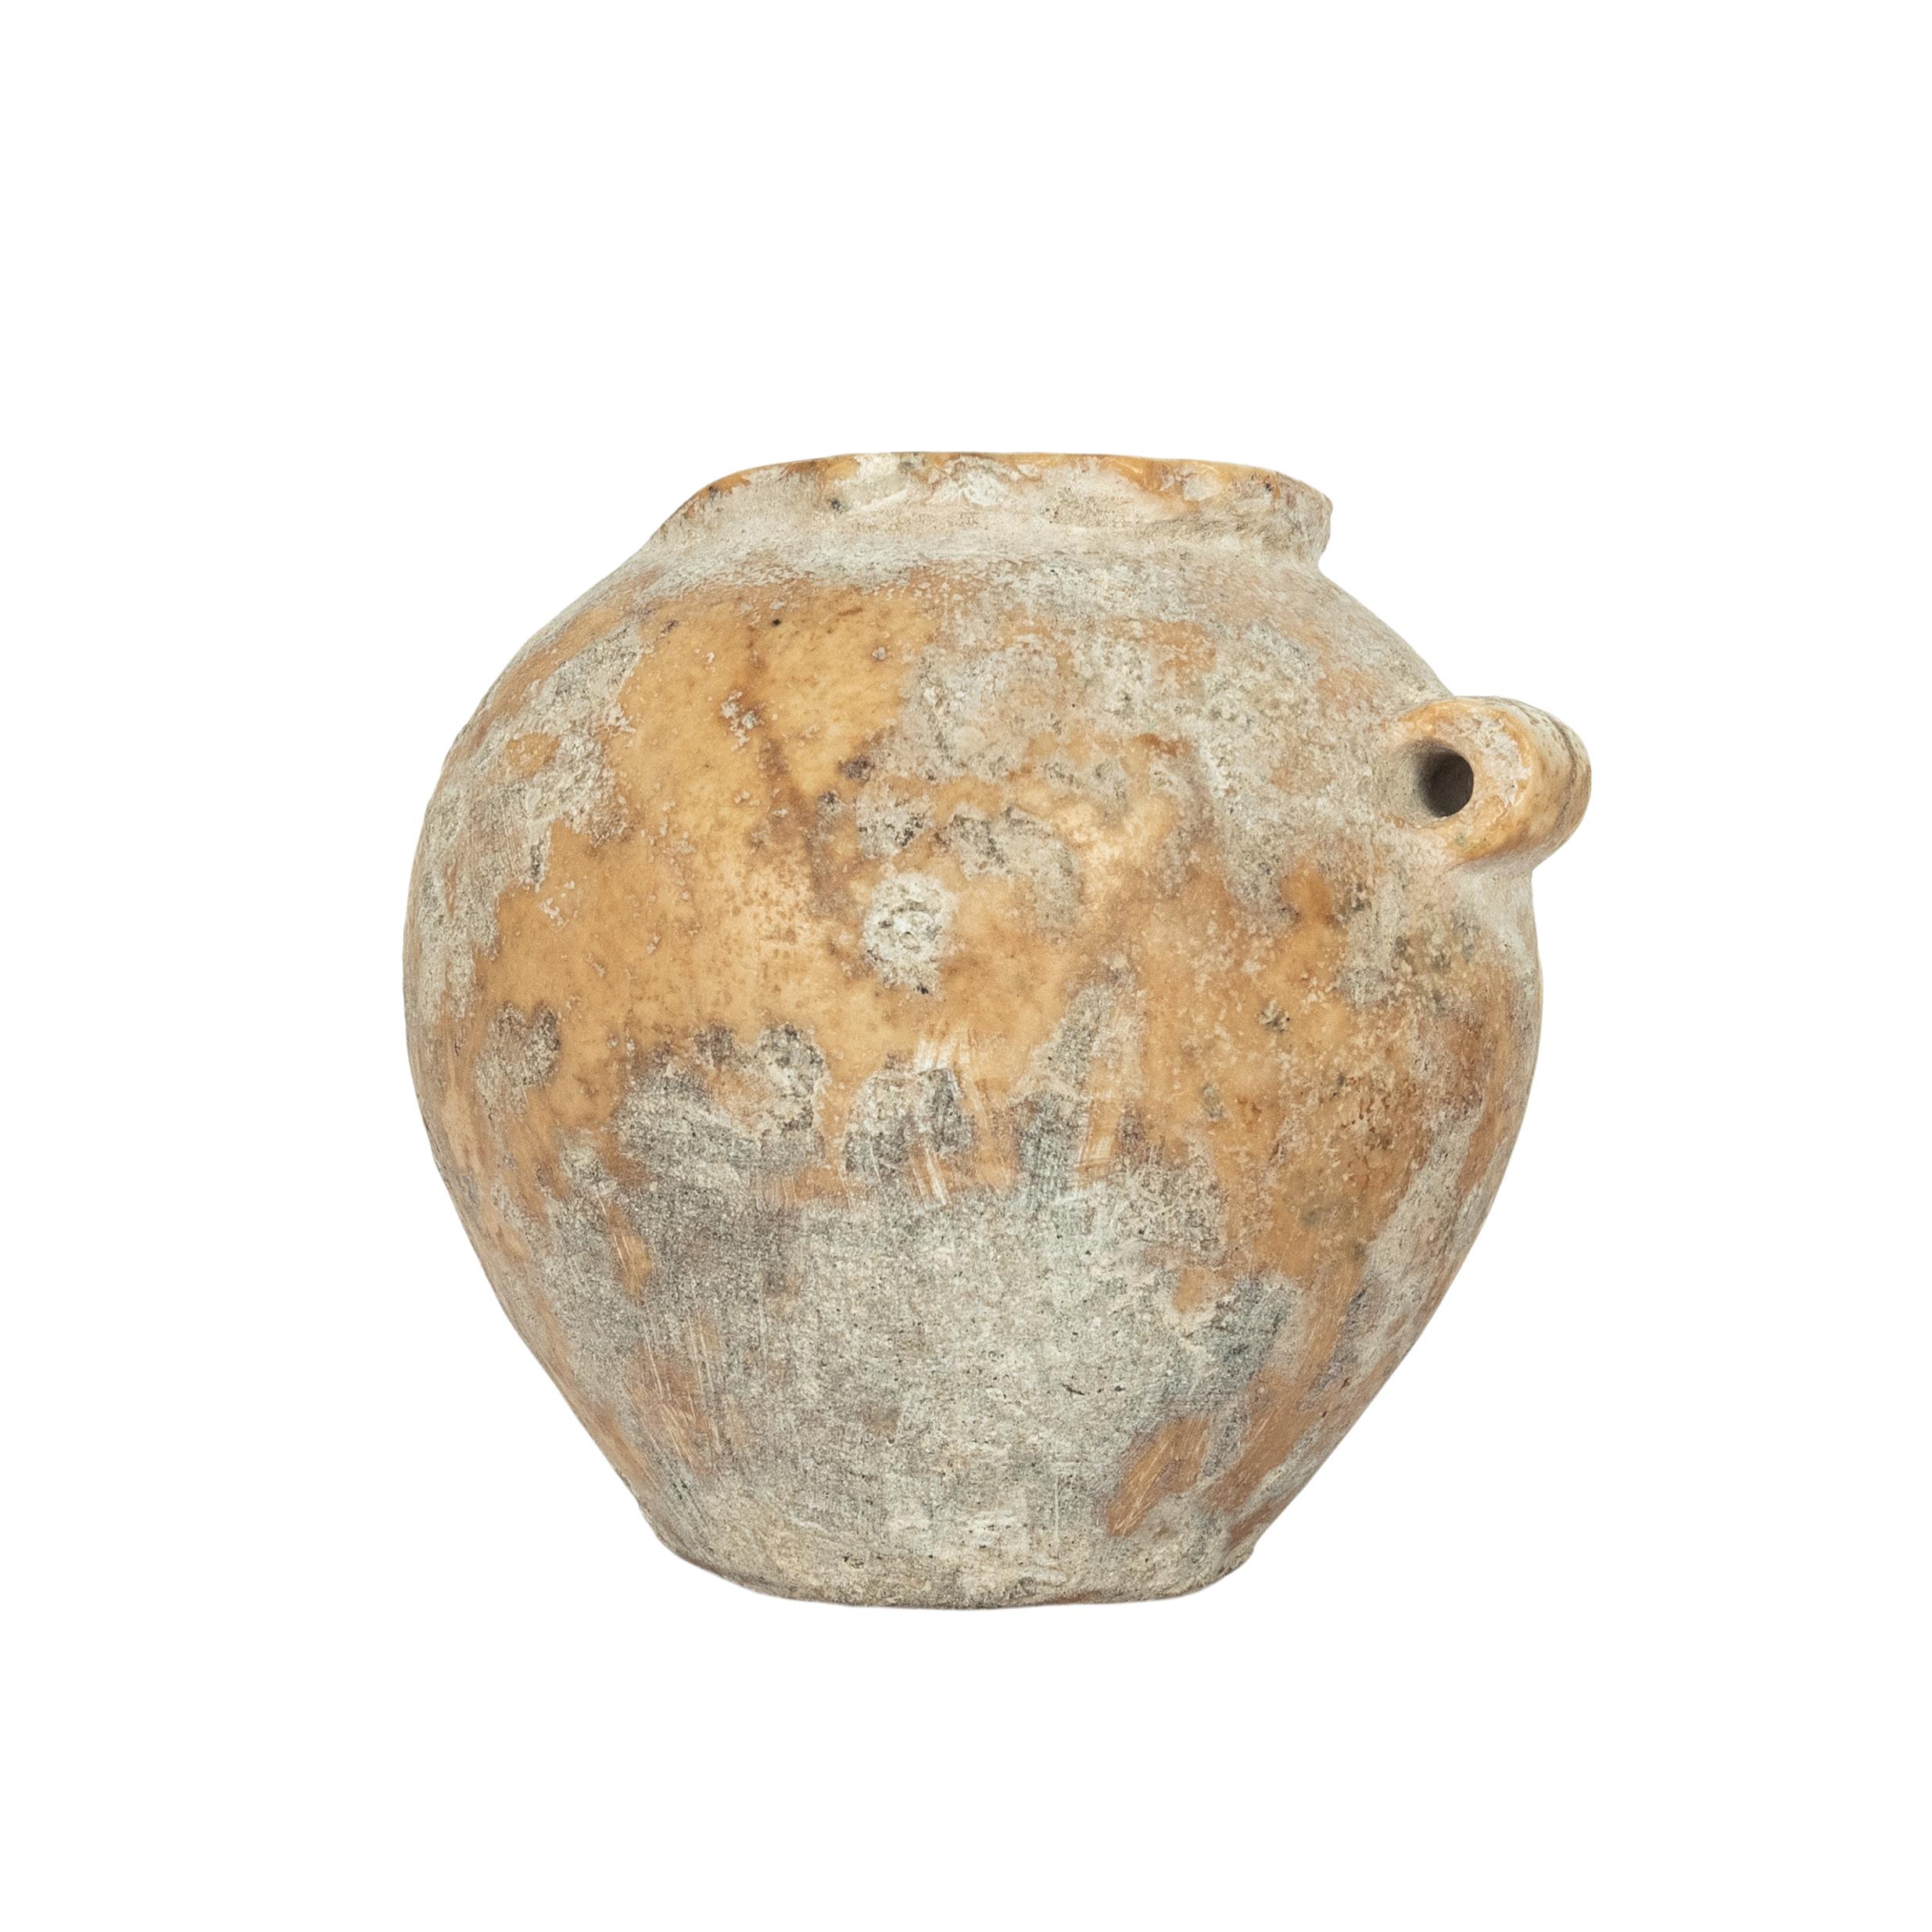 XVIIIe siècle et antérieur Ancienne Égypte Ancien Empire Miniature A Stone Vessel Jar 2600-2800 BCE